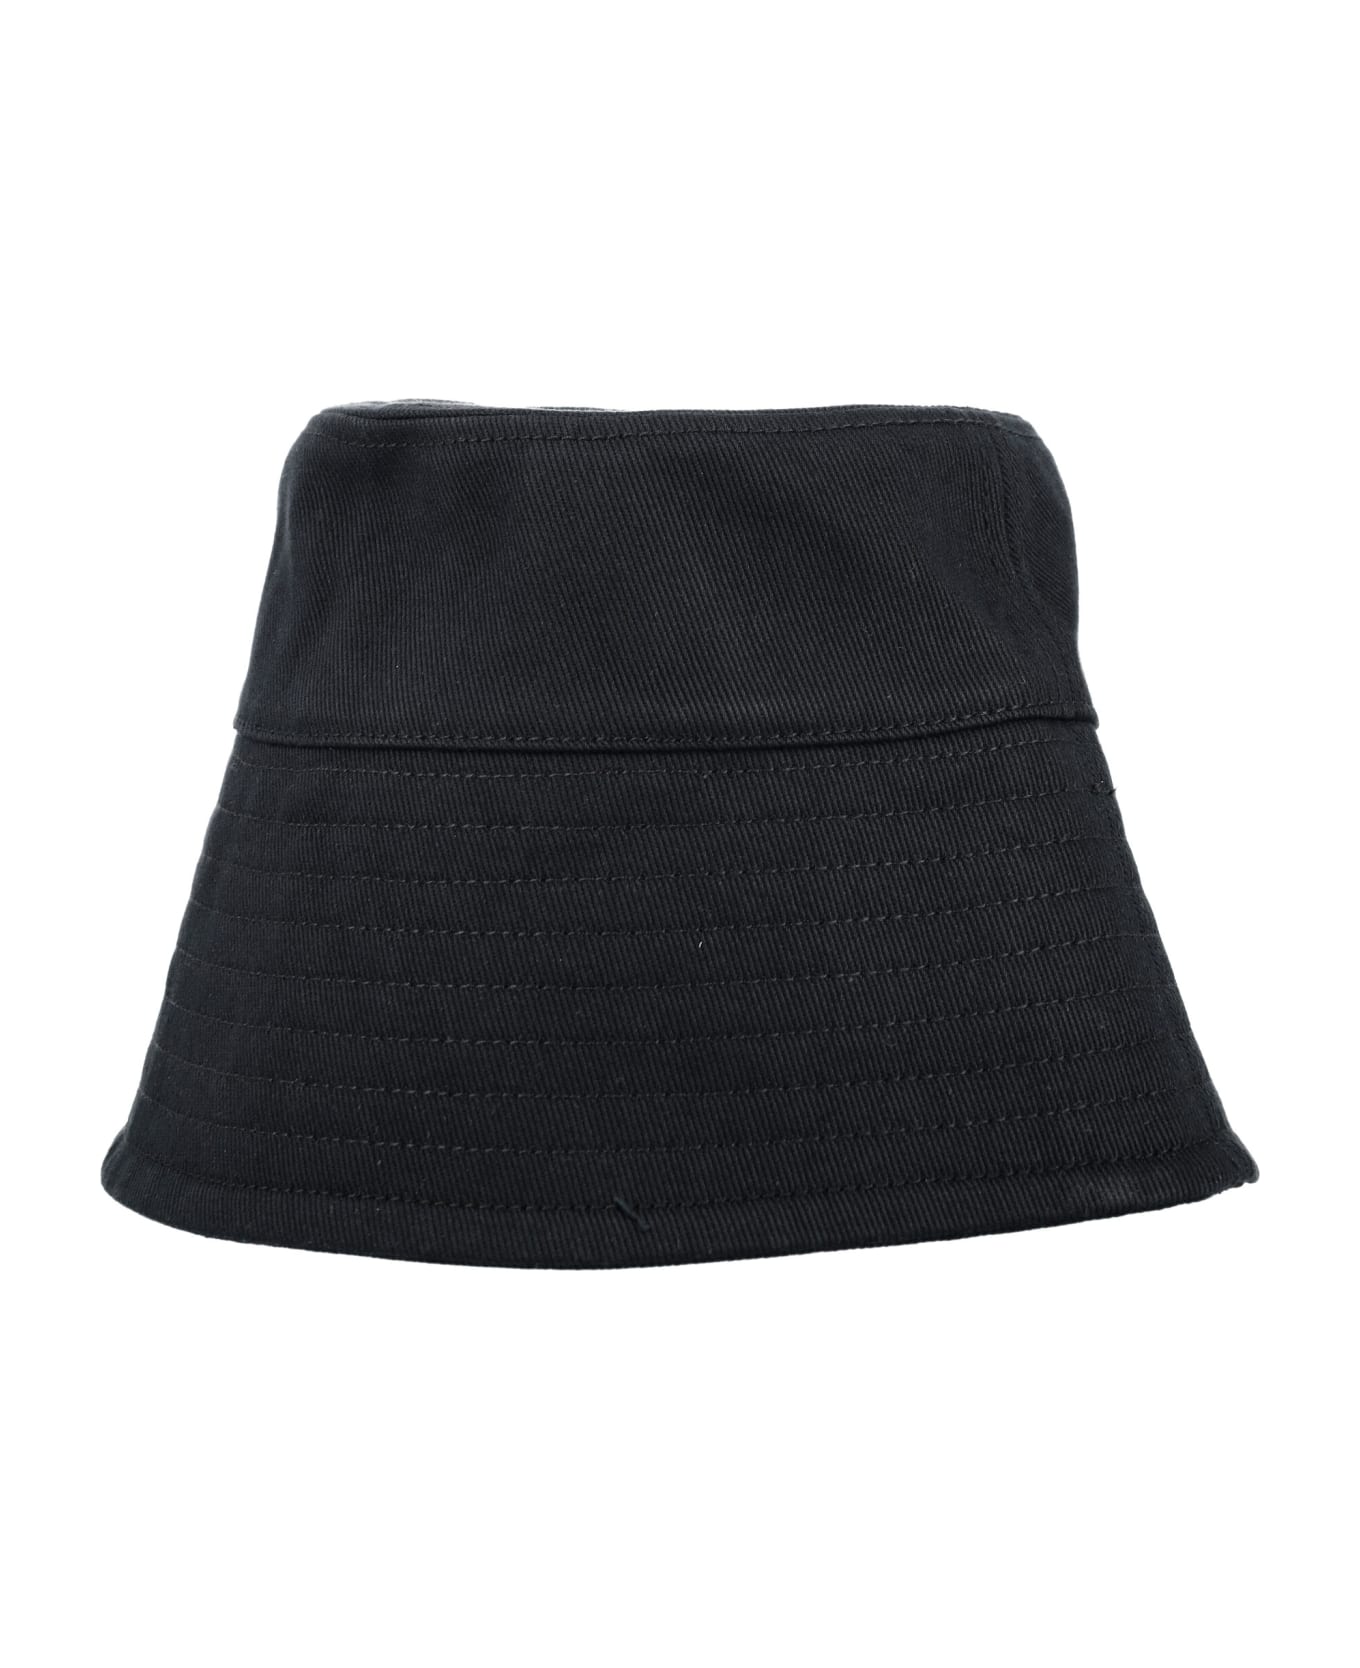 Patou Bucket Hat - BLACK